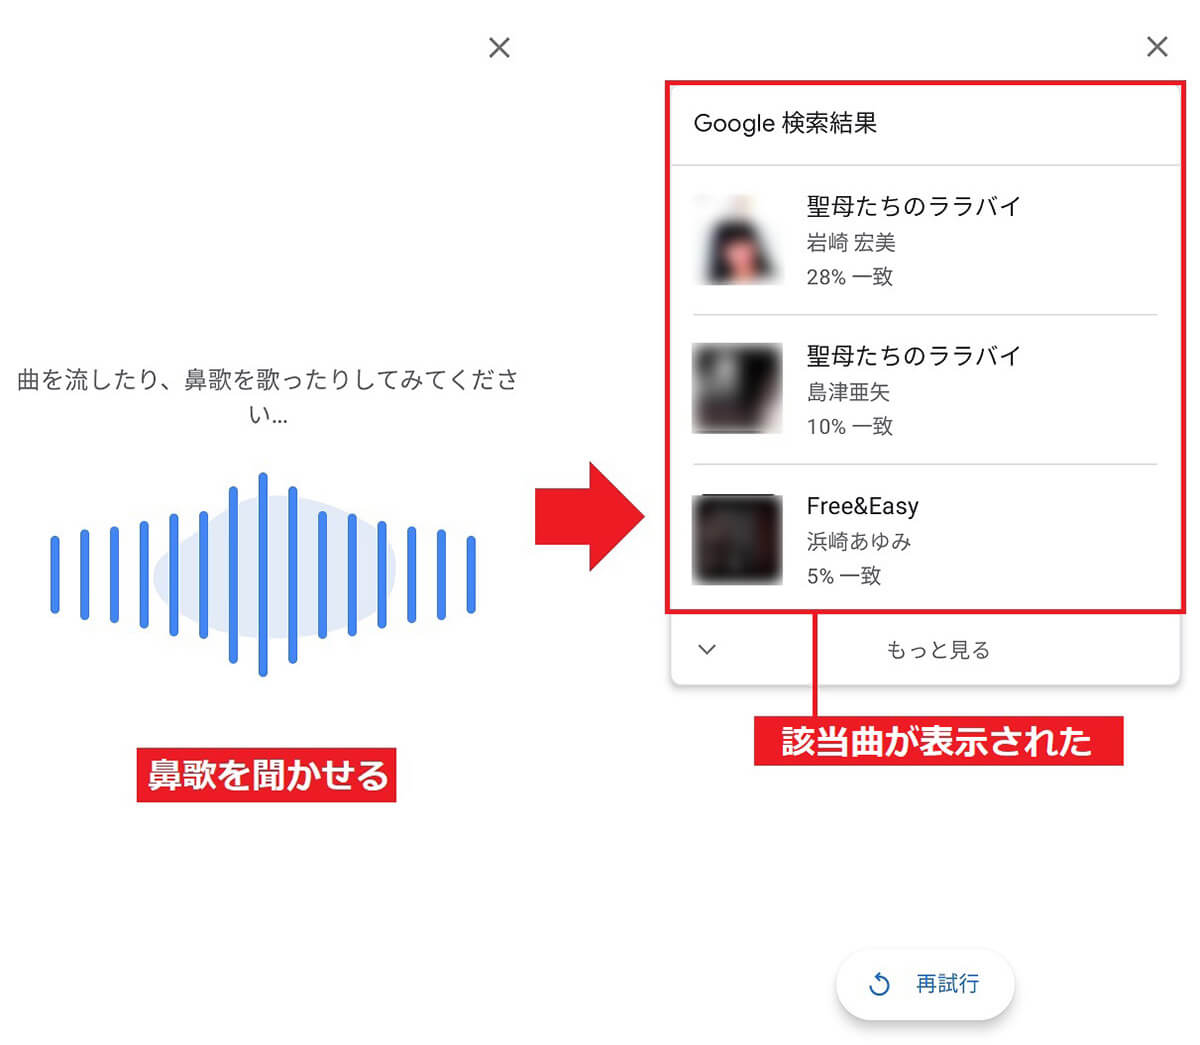 Google検索のマイクボタンで曲を検索する手順【Android】2